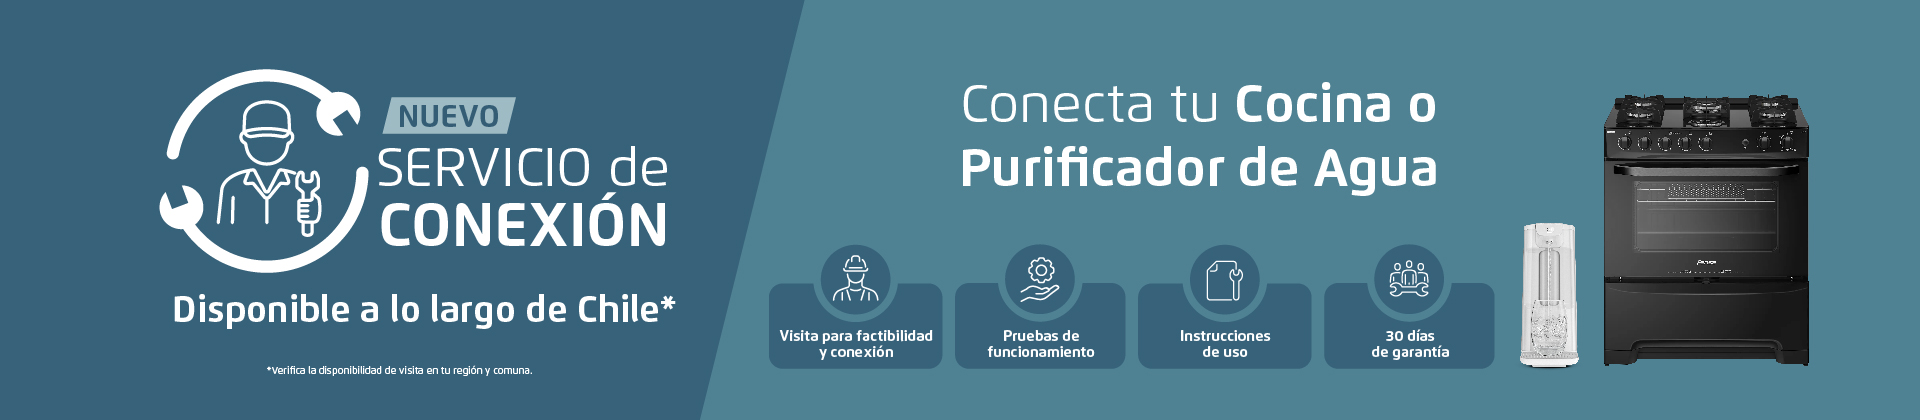 Servicio de Conexión Fensa - Conecta tu cocina o purificador de Agua